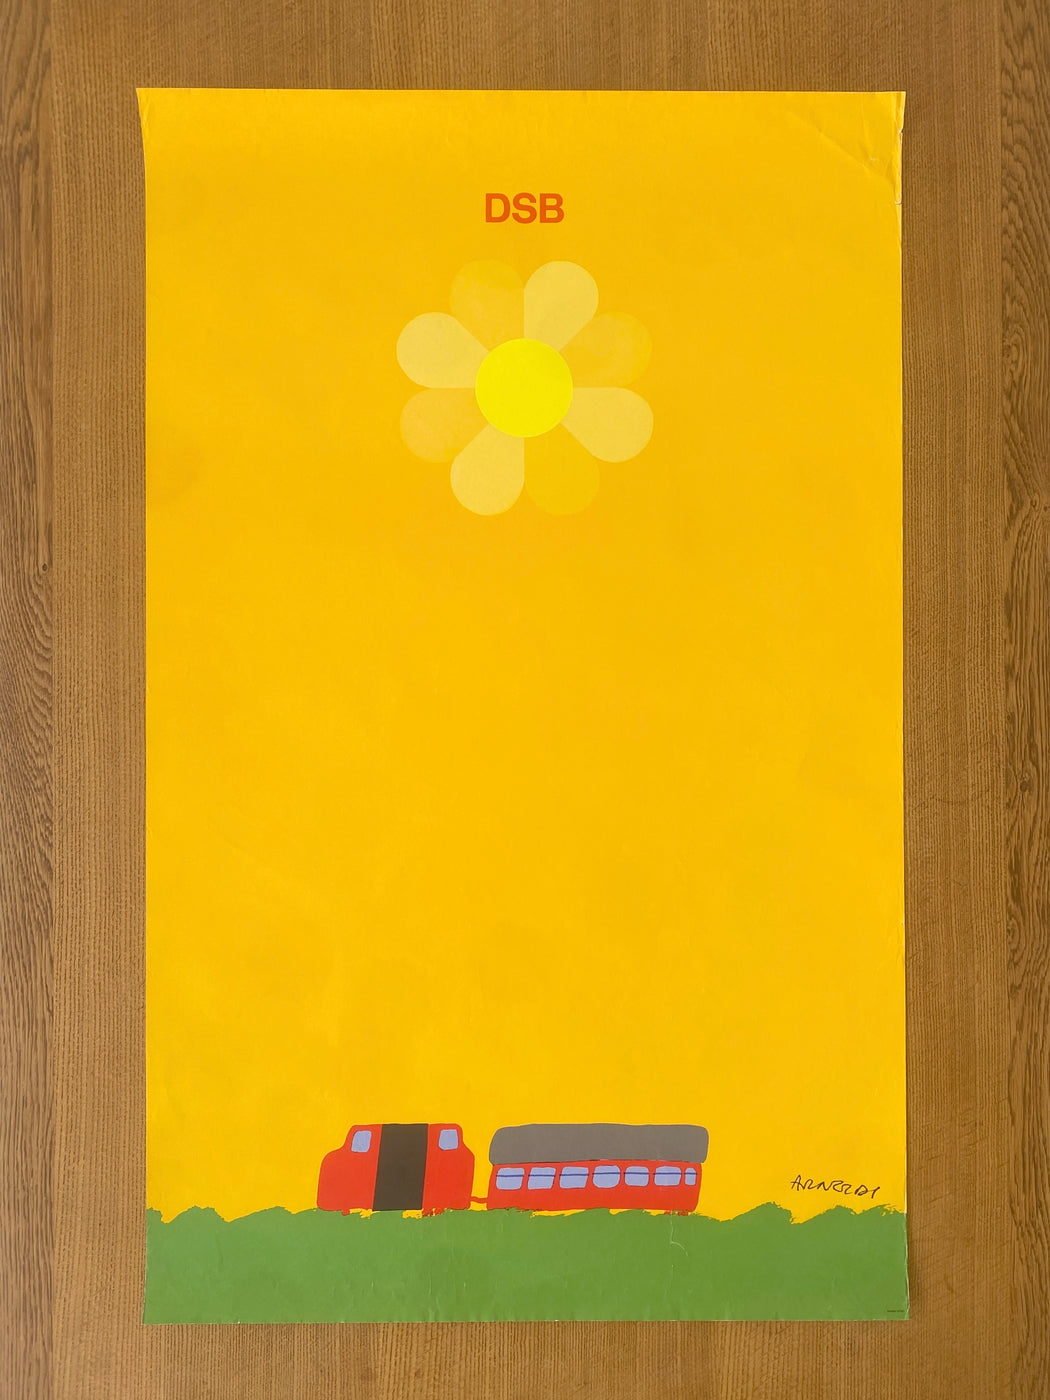 Per Arnoldi 1975 DSB 'Sun' Poster